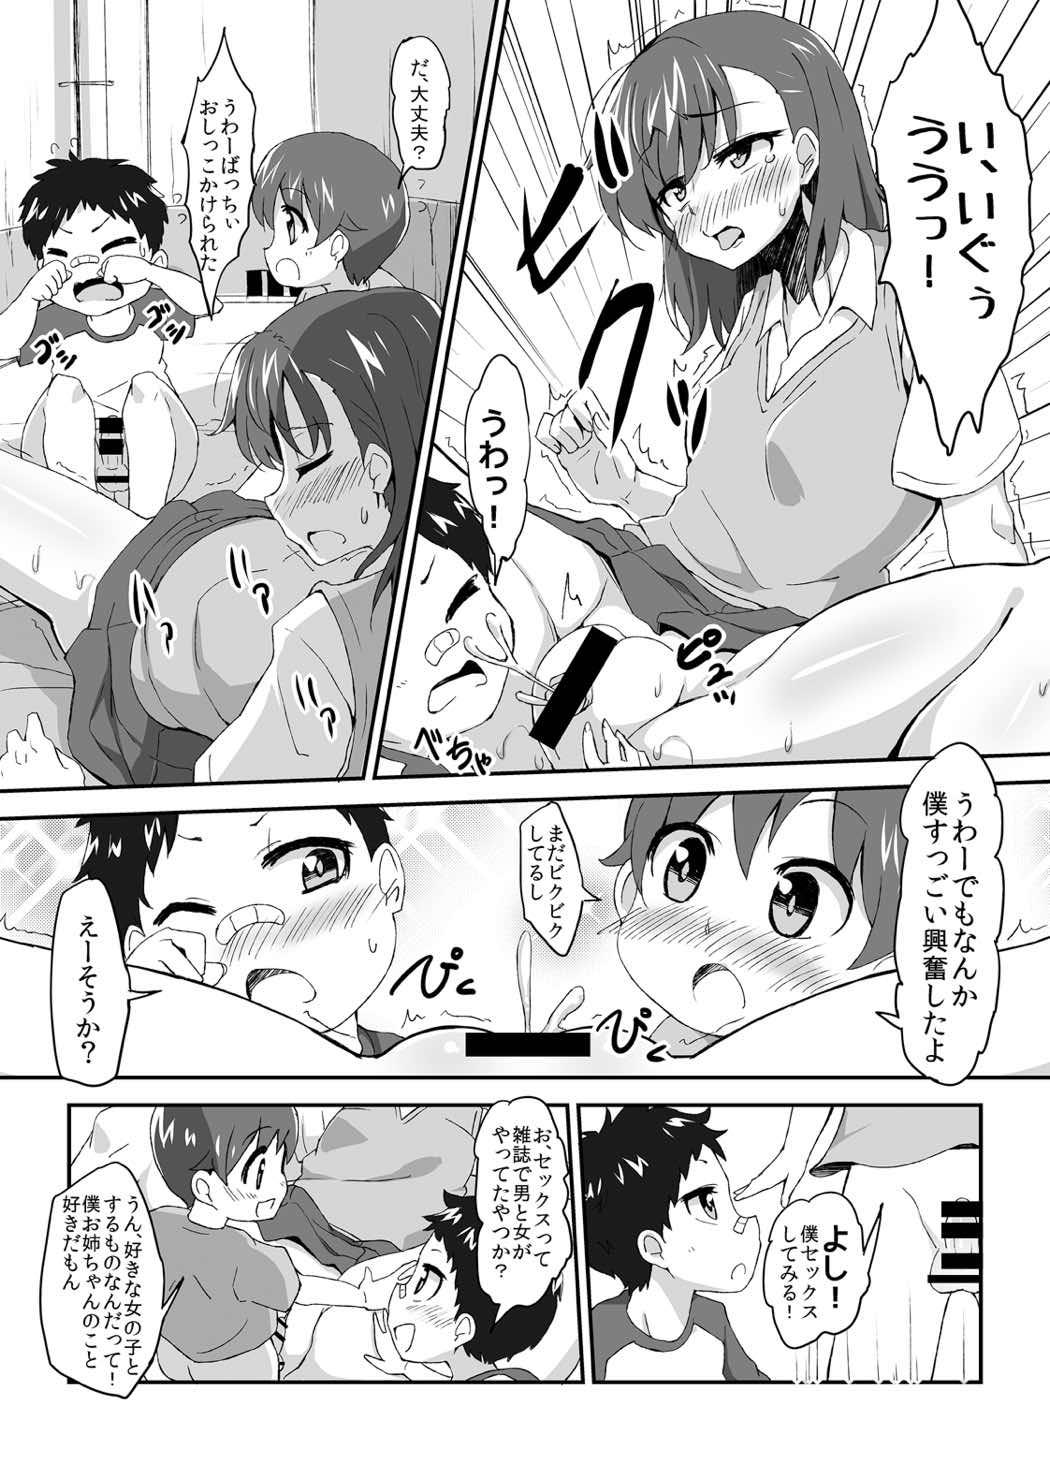 Bubblebutt Mikoto Onee-chan no Kodomo Panic - Toaru kagaku no railgun Women Sucking Dick - Page 9